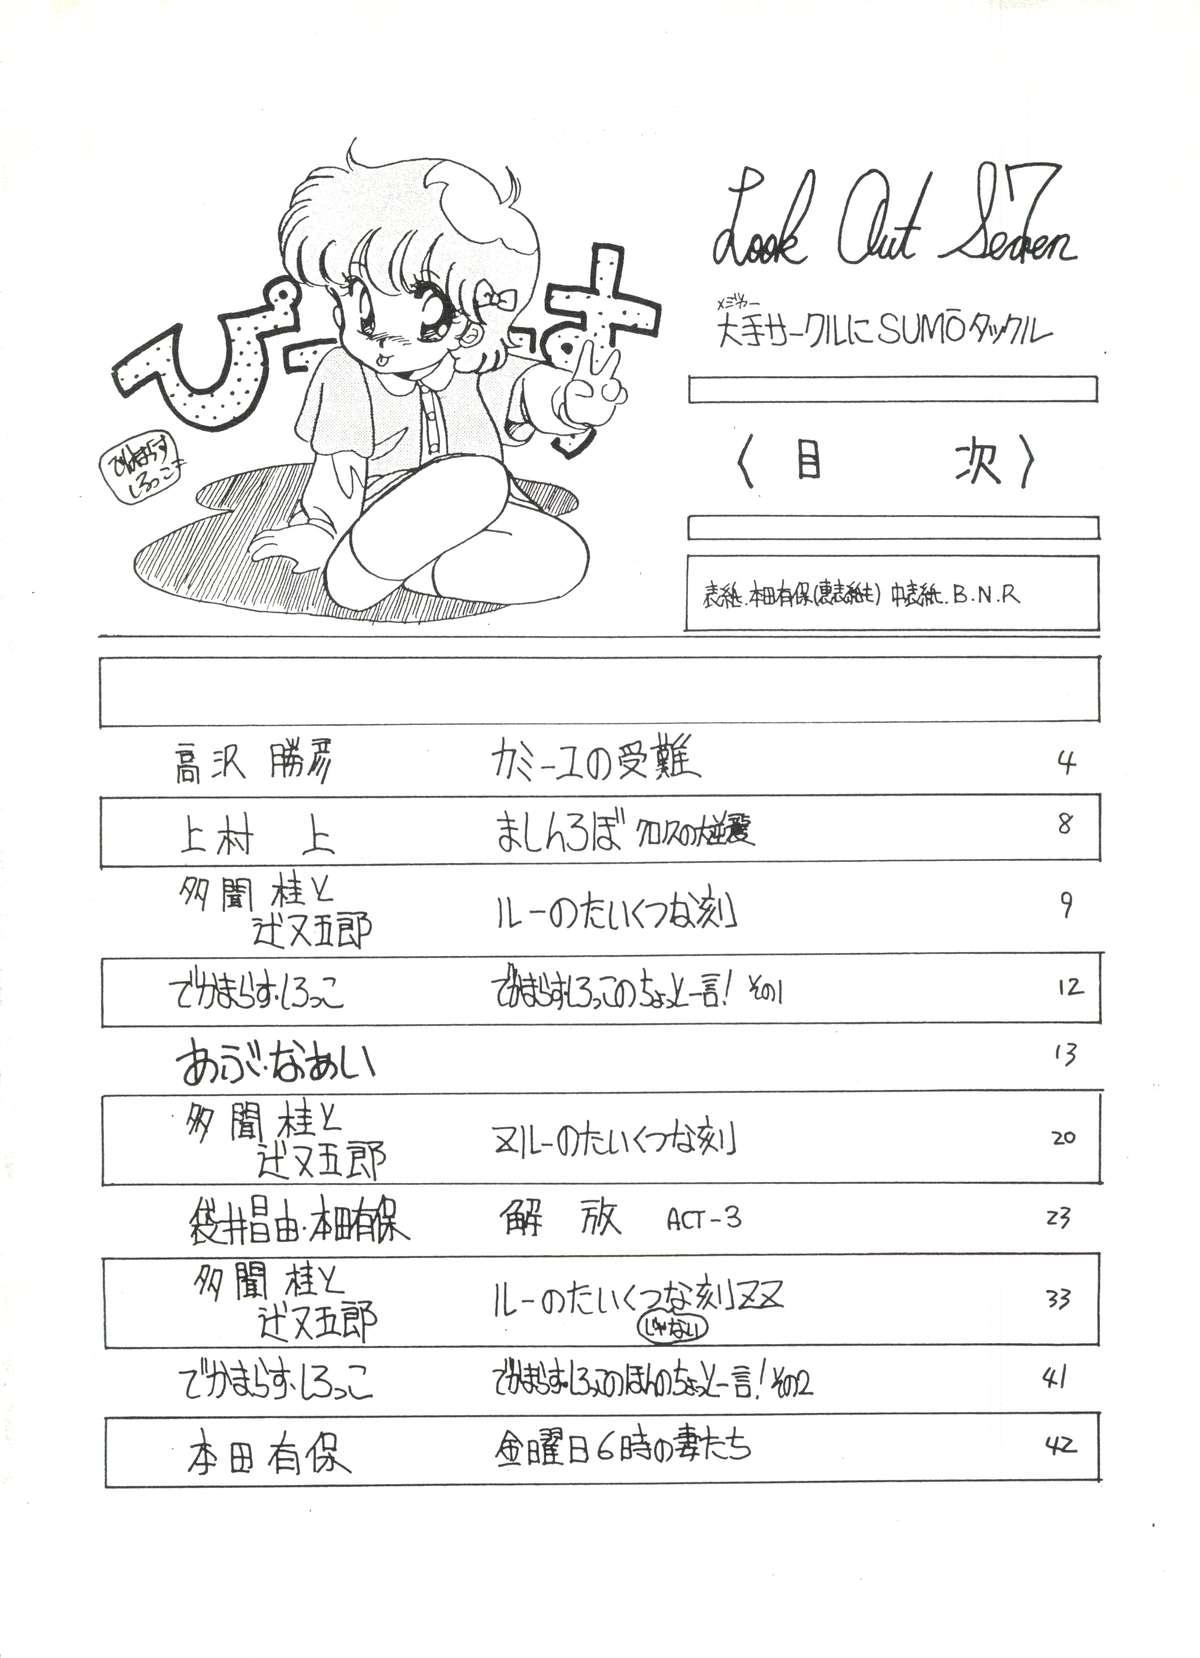 Jacking Off LOOK OUT 7 - Urusei yatsura Maison ikkoku Gundam zz Pastel yumi Mulata - Page 2